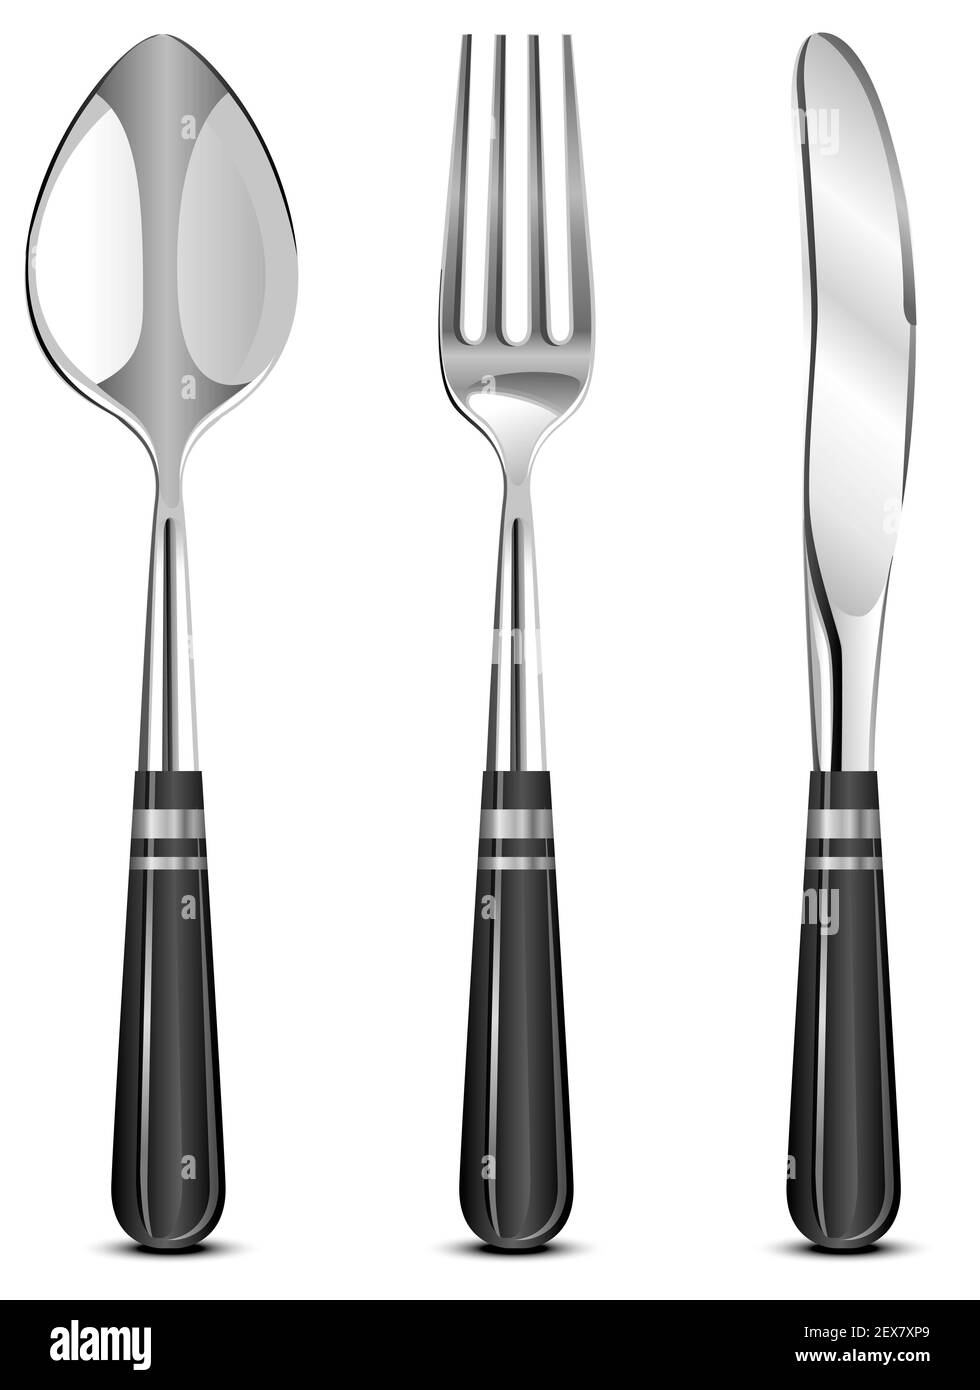 Fourchette cuillère ensemble de couteaux graphique noir blanc isolé dessin  illustration vecteur Image Vectorielle Stock - Alamy